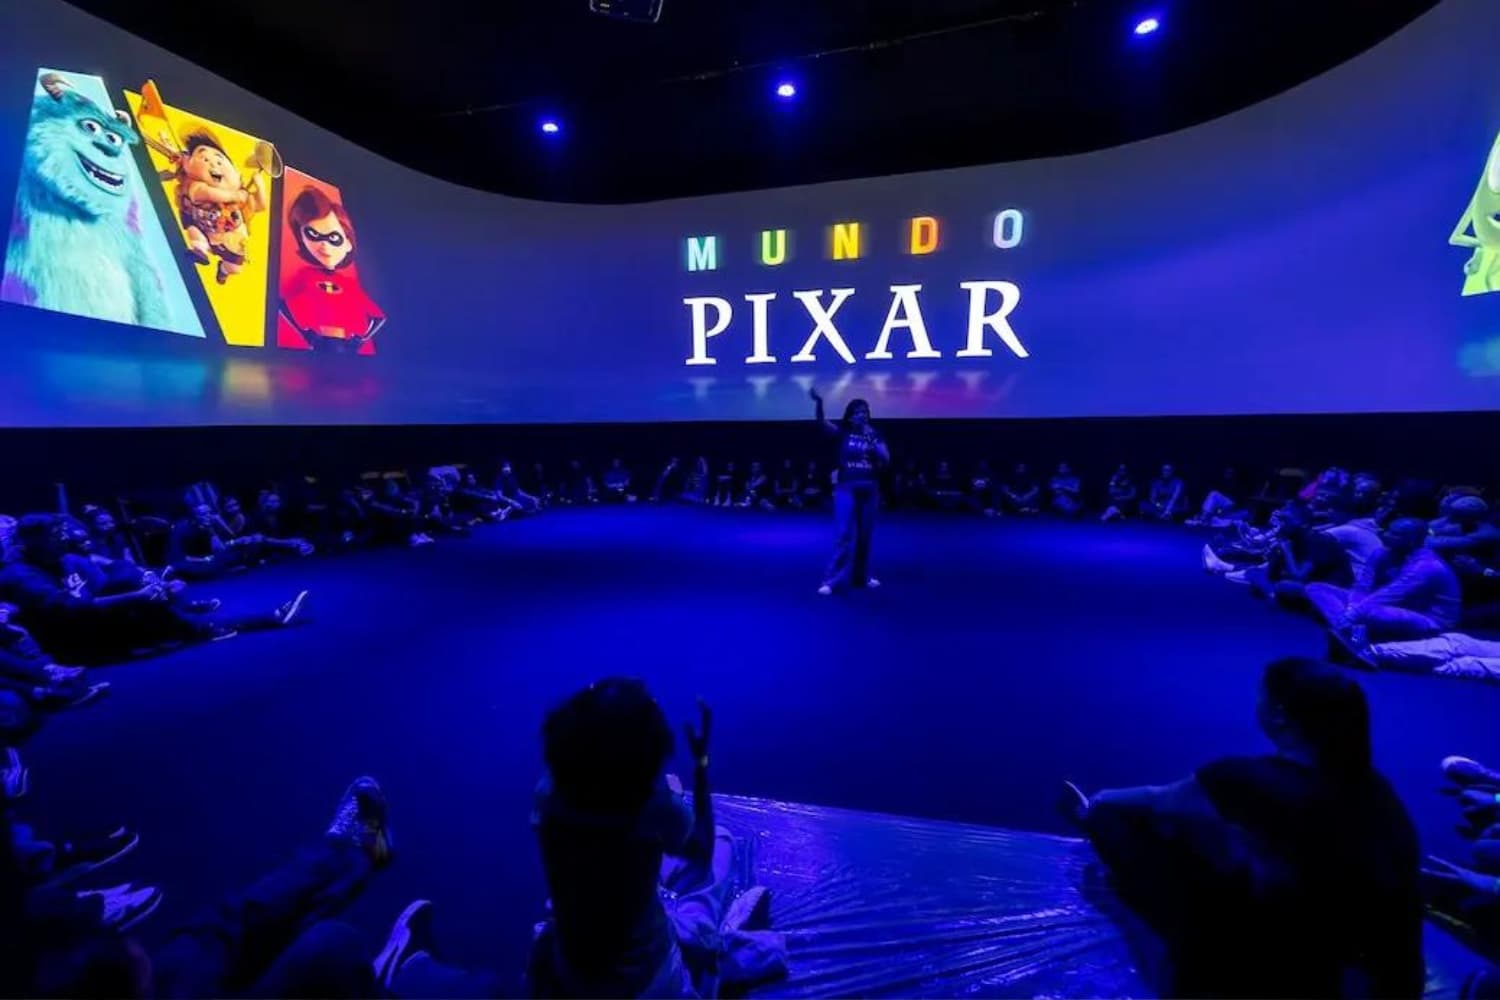 Mundo Pixar Madrid: The Largest Pixar Exhibition at IFEMA